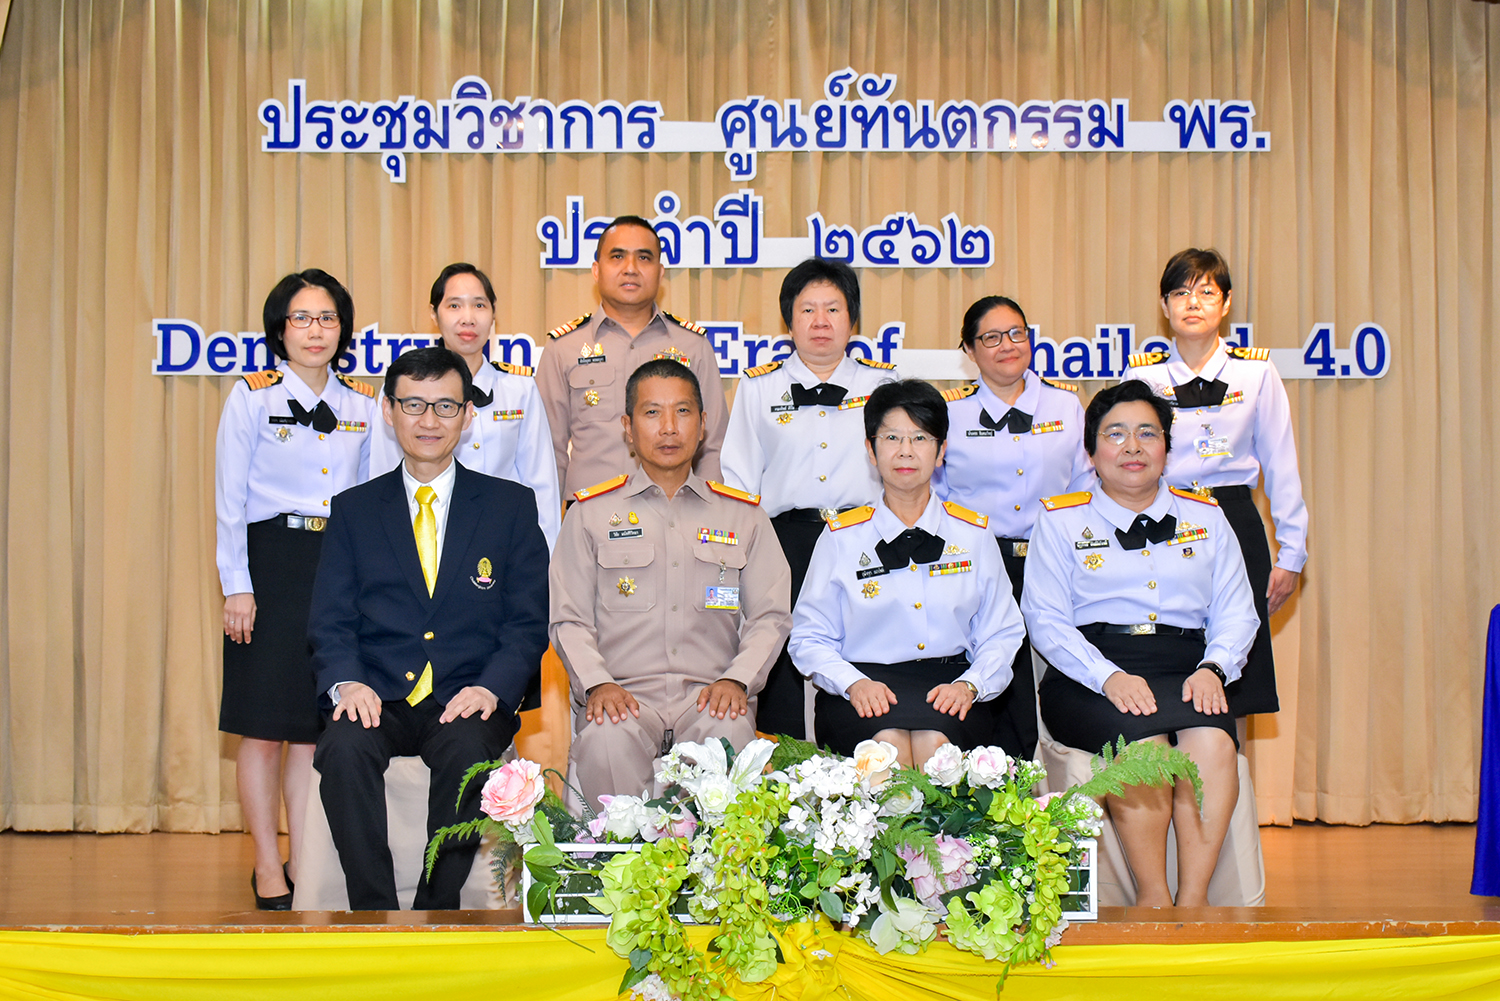 งานประชุมวิชาการศูนย์ทันตกรรม พร. ประจำปี 2562 " Dentistry in the Era of Thailand 4.0 "